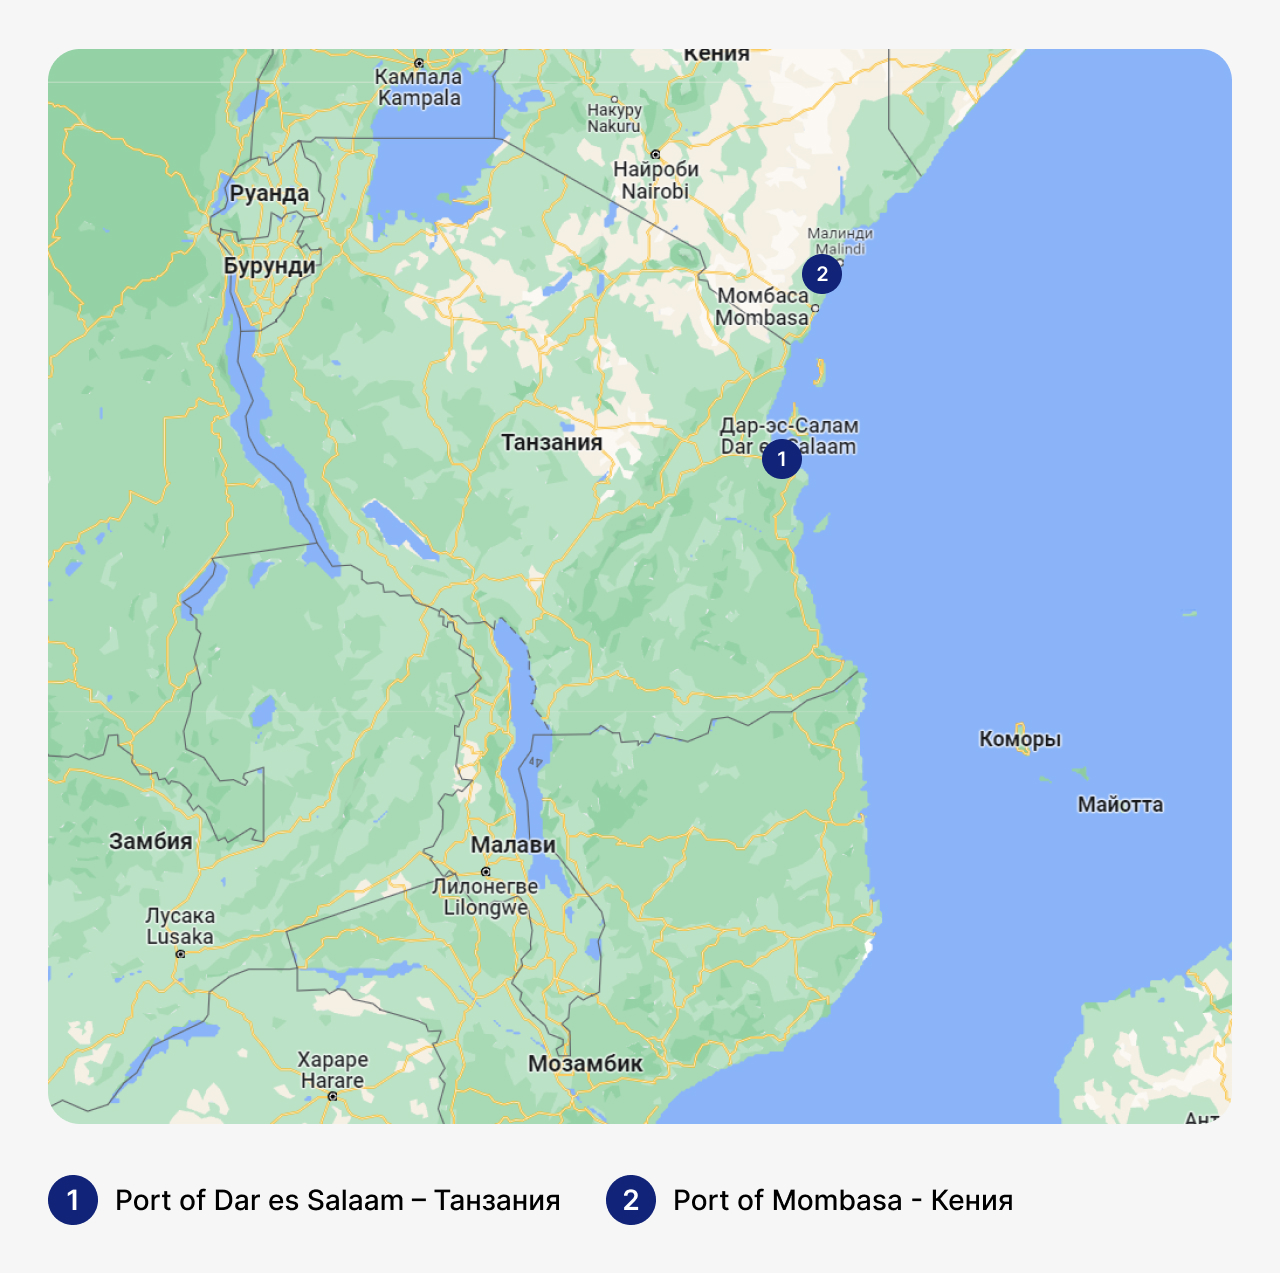 Лучшие марины в Руанде, карта Руанды с маринами, стоянка для яхт в Руанде, где хранить яхты в Руанде
